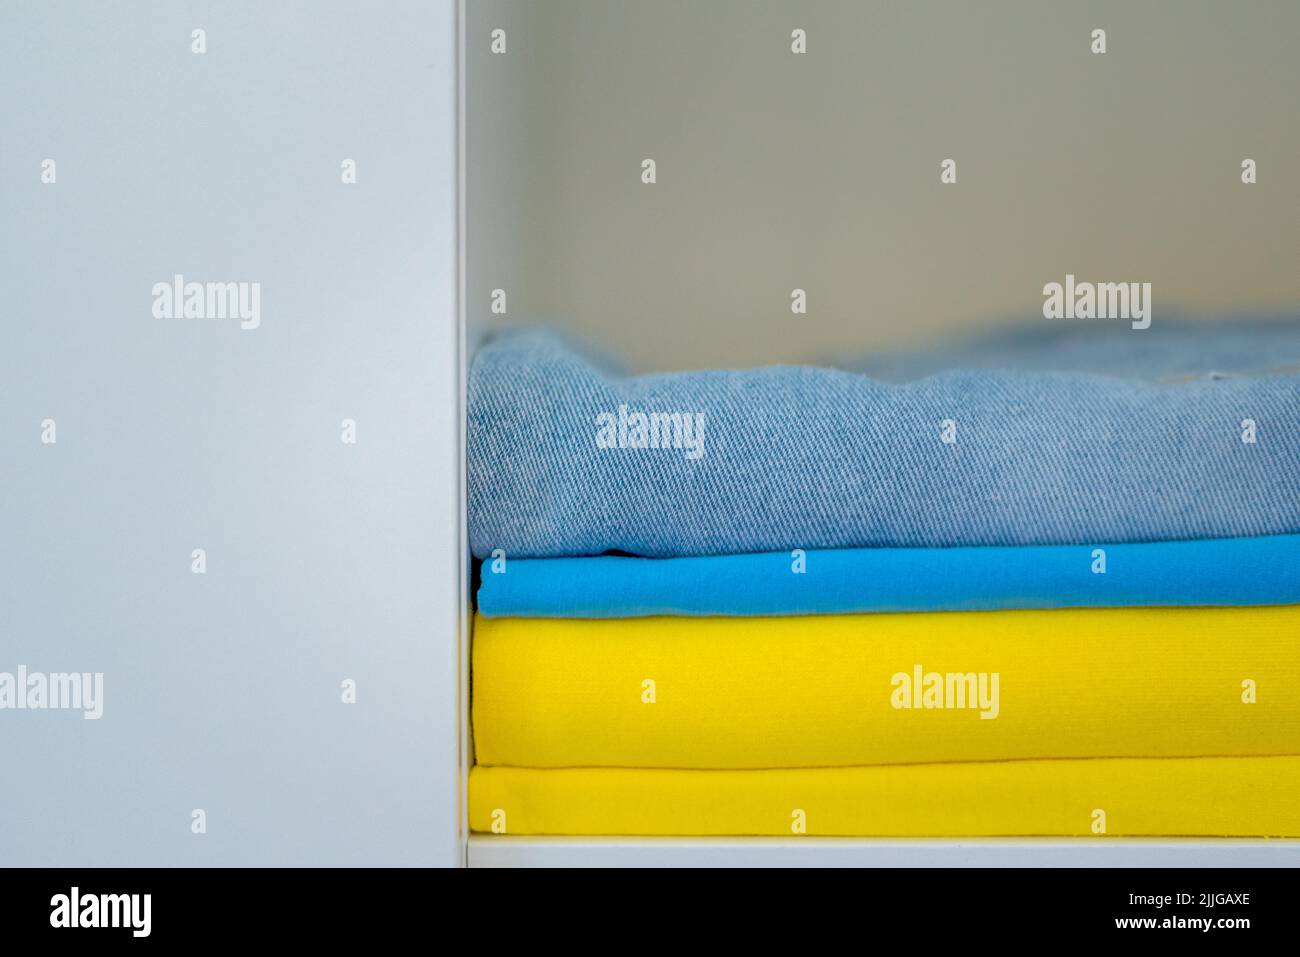 La ropa de colores brillantes se apilan cuidadosamente. Los colores amarillo y azul de la bandera ucraniana en el armario. Foto de stock